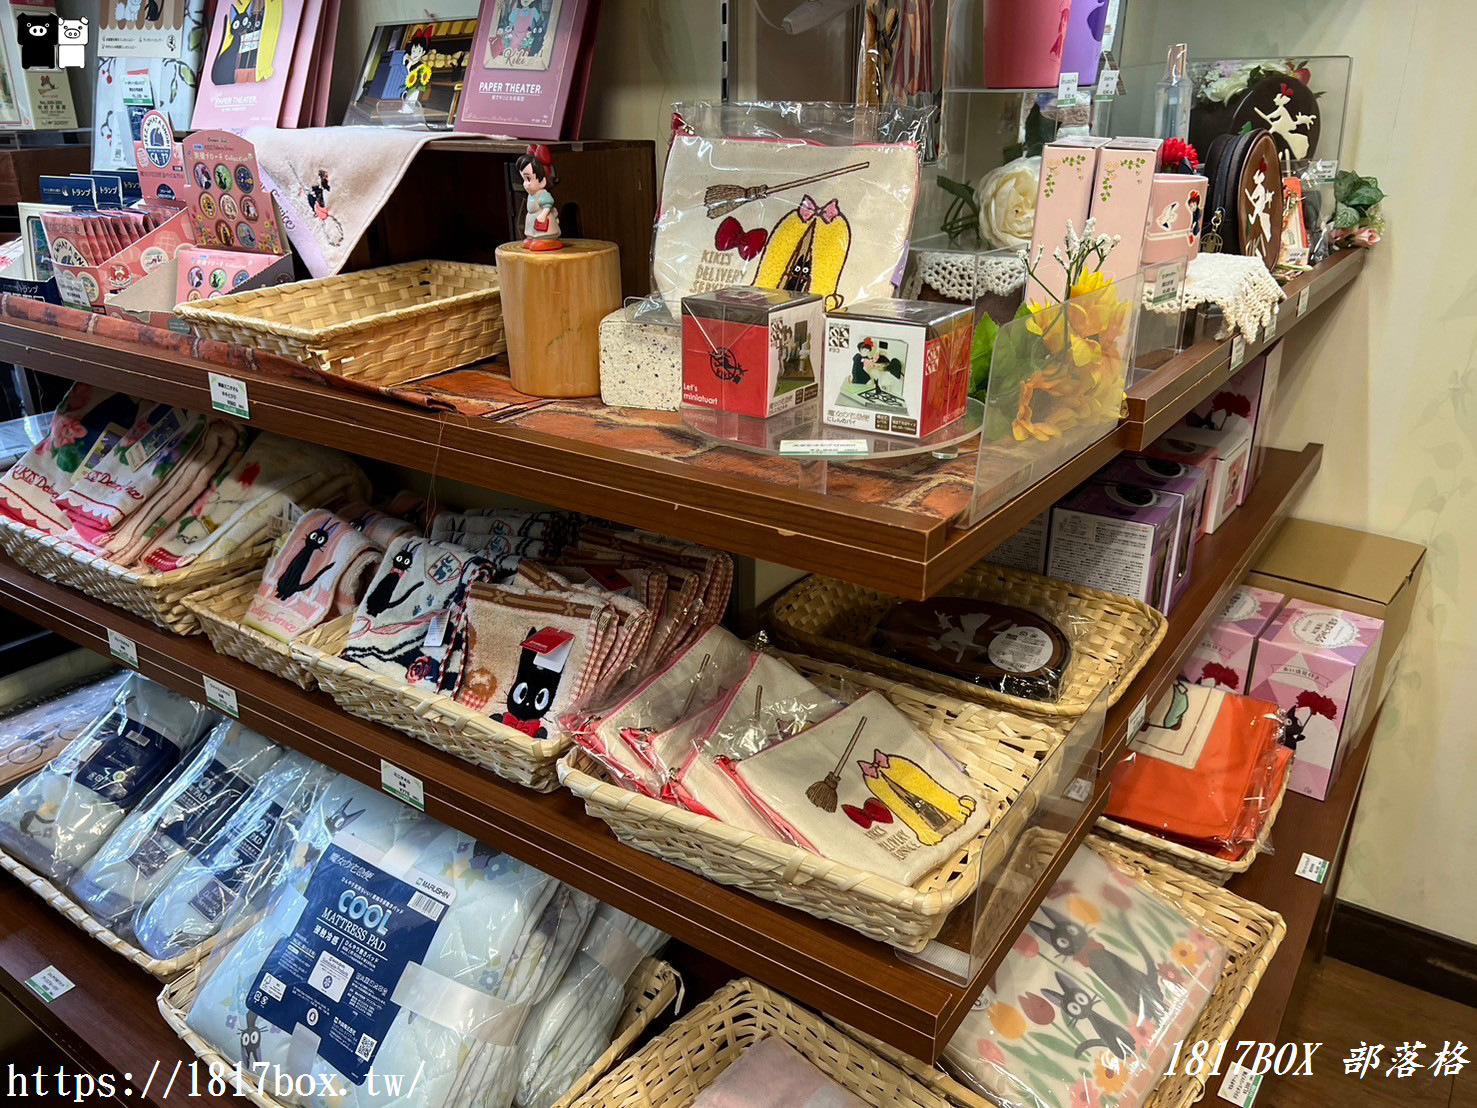 【京都景點】橡子共和國 二寧坂店。吉卜力工作室周邊商品。清水寺附近景點